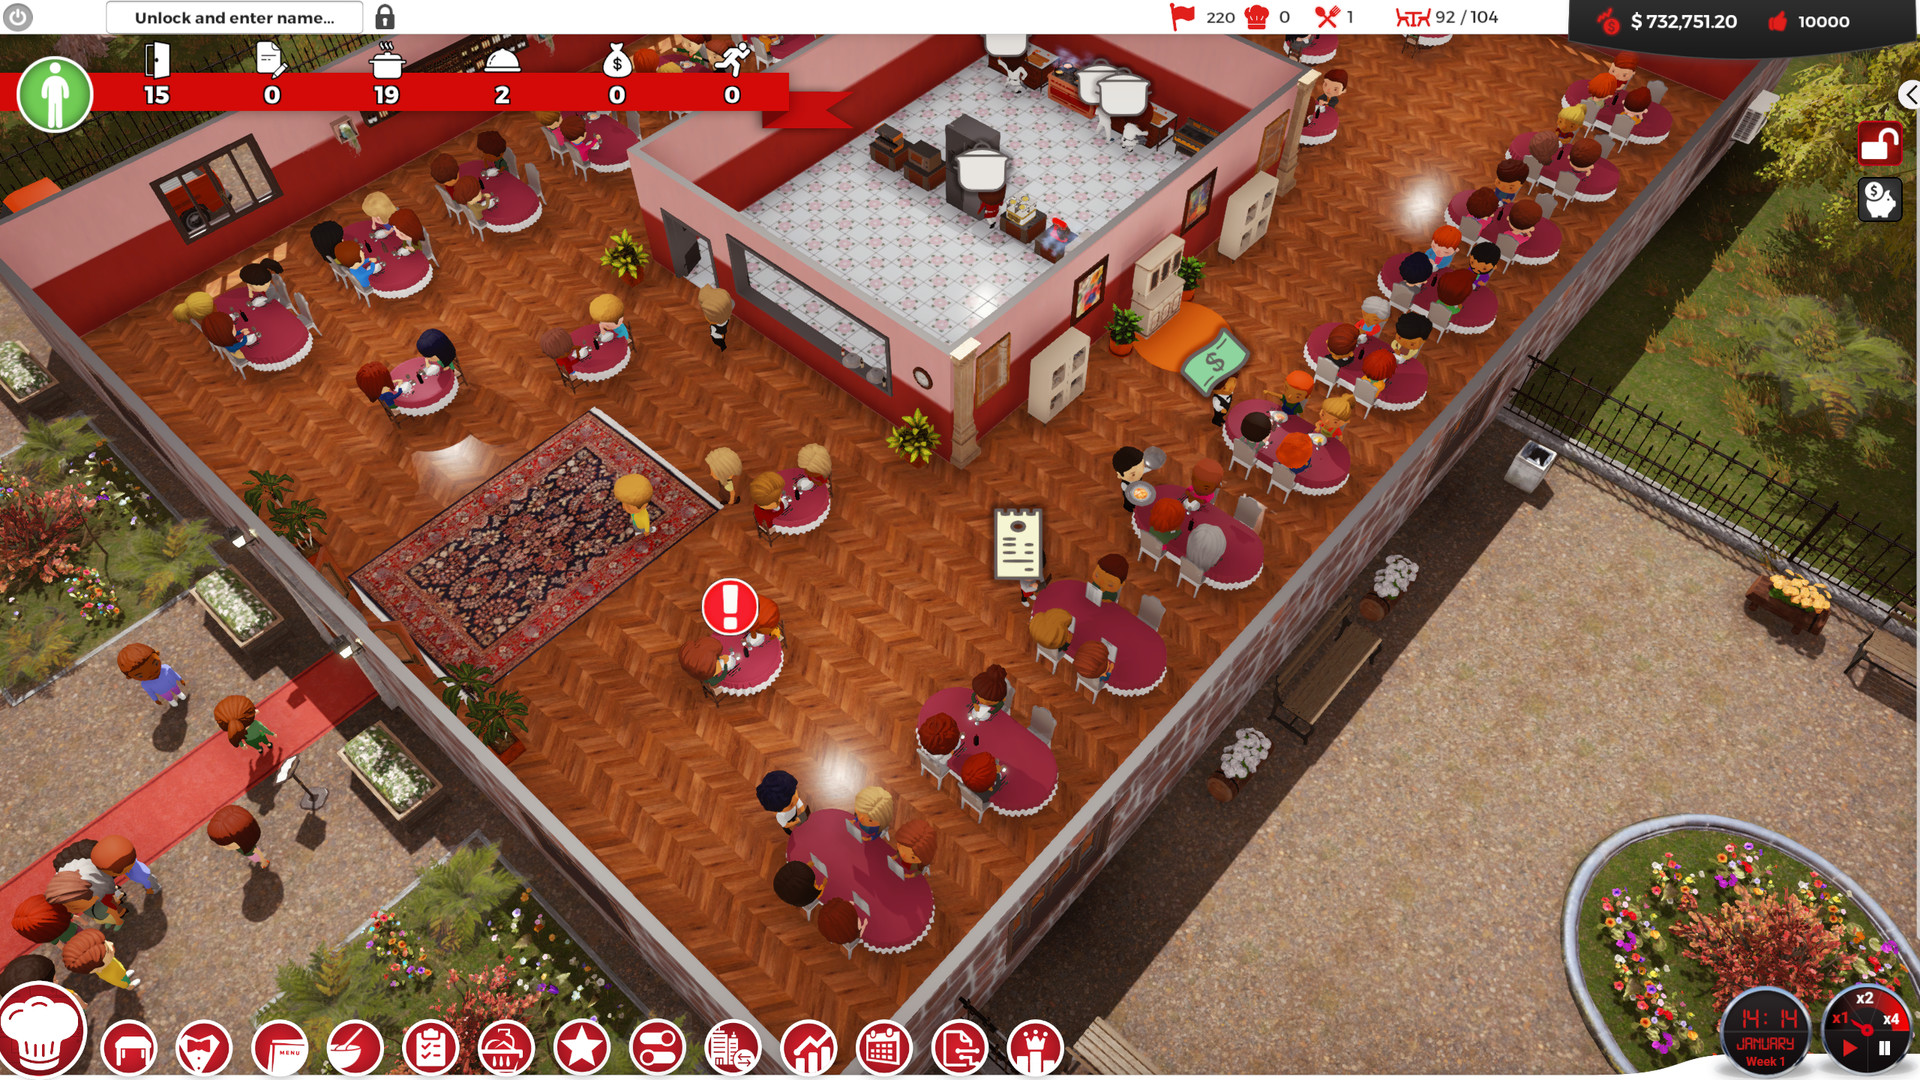 Chef A Restaurant Tycoon Game On Steam - roblox restaurant tycoon designs